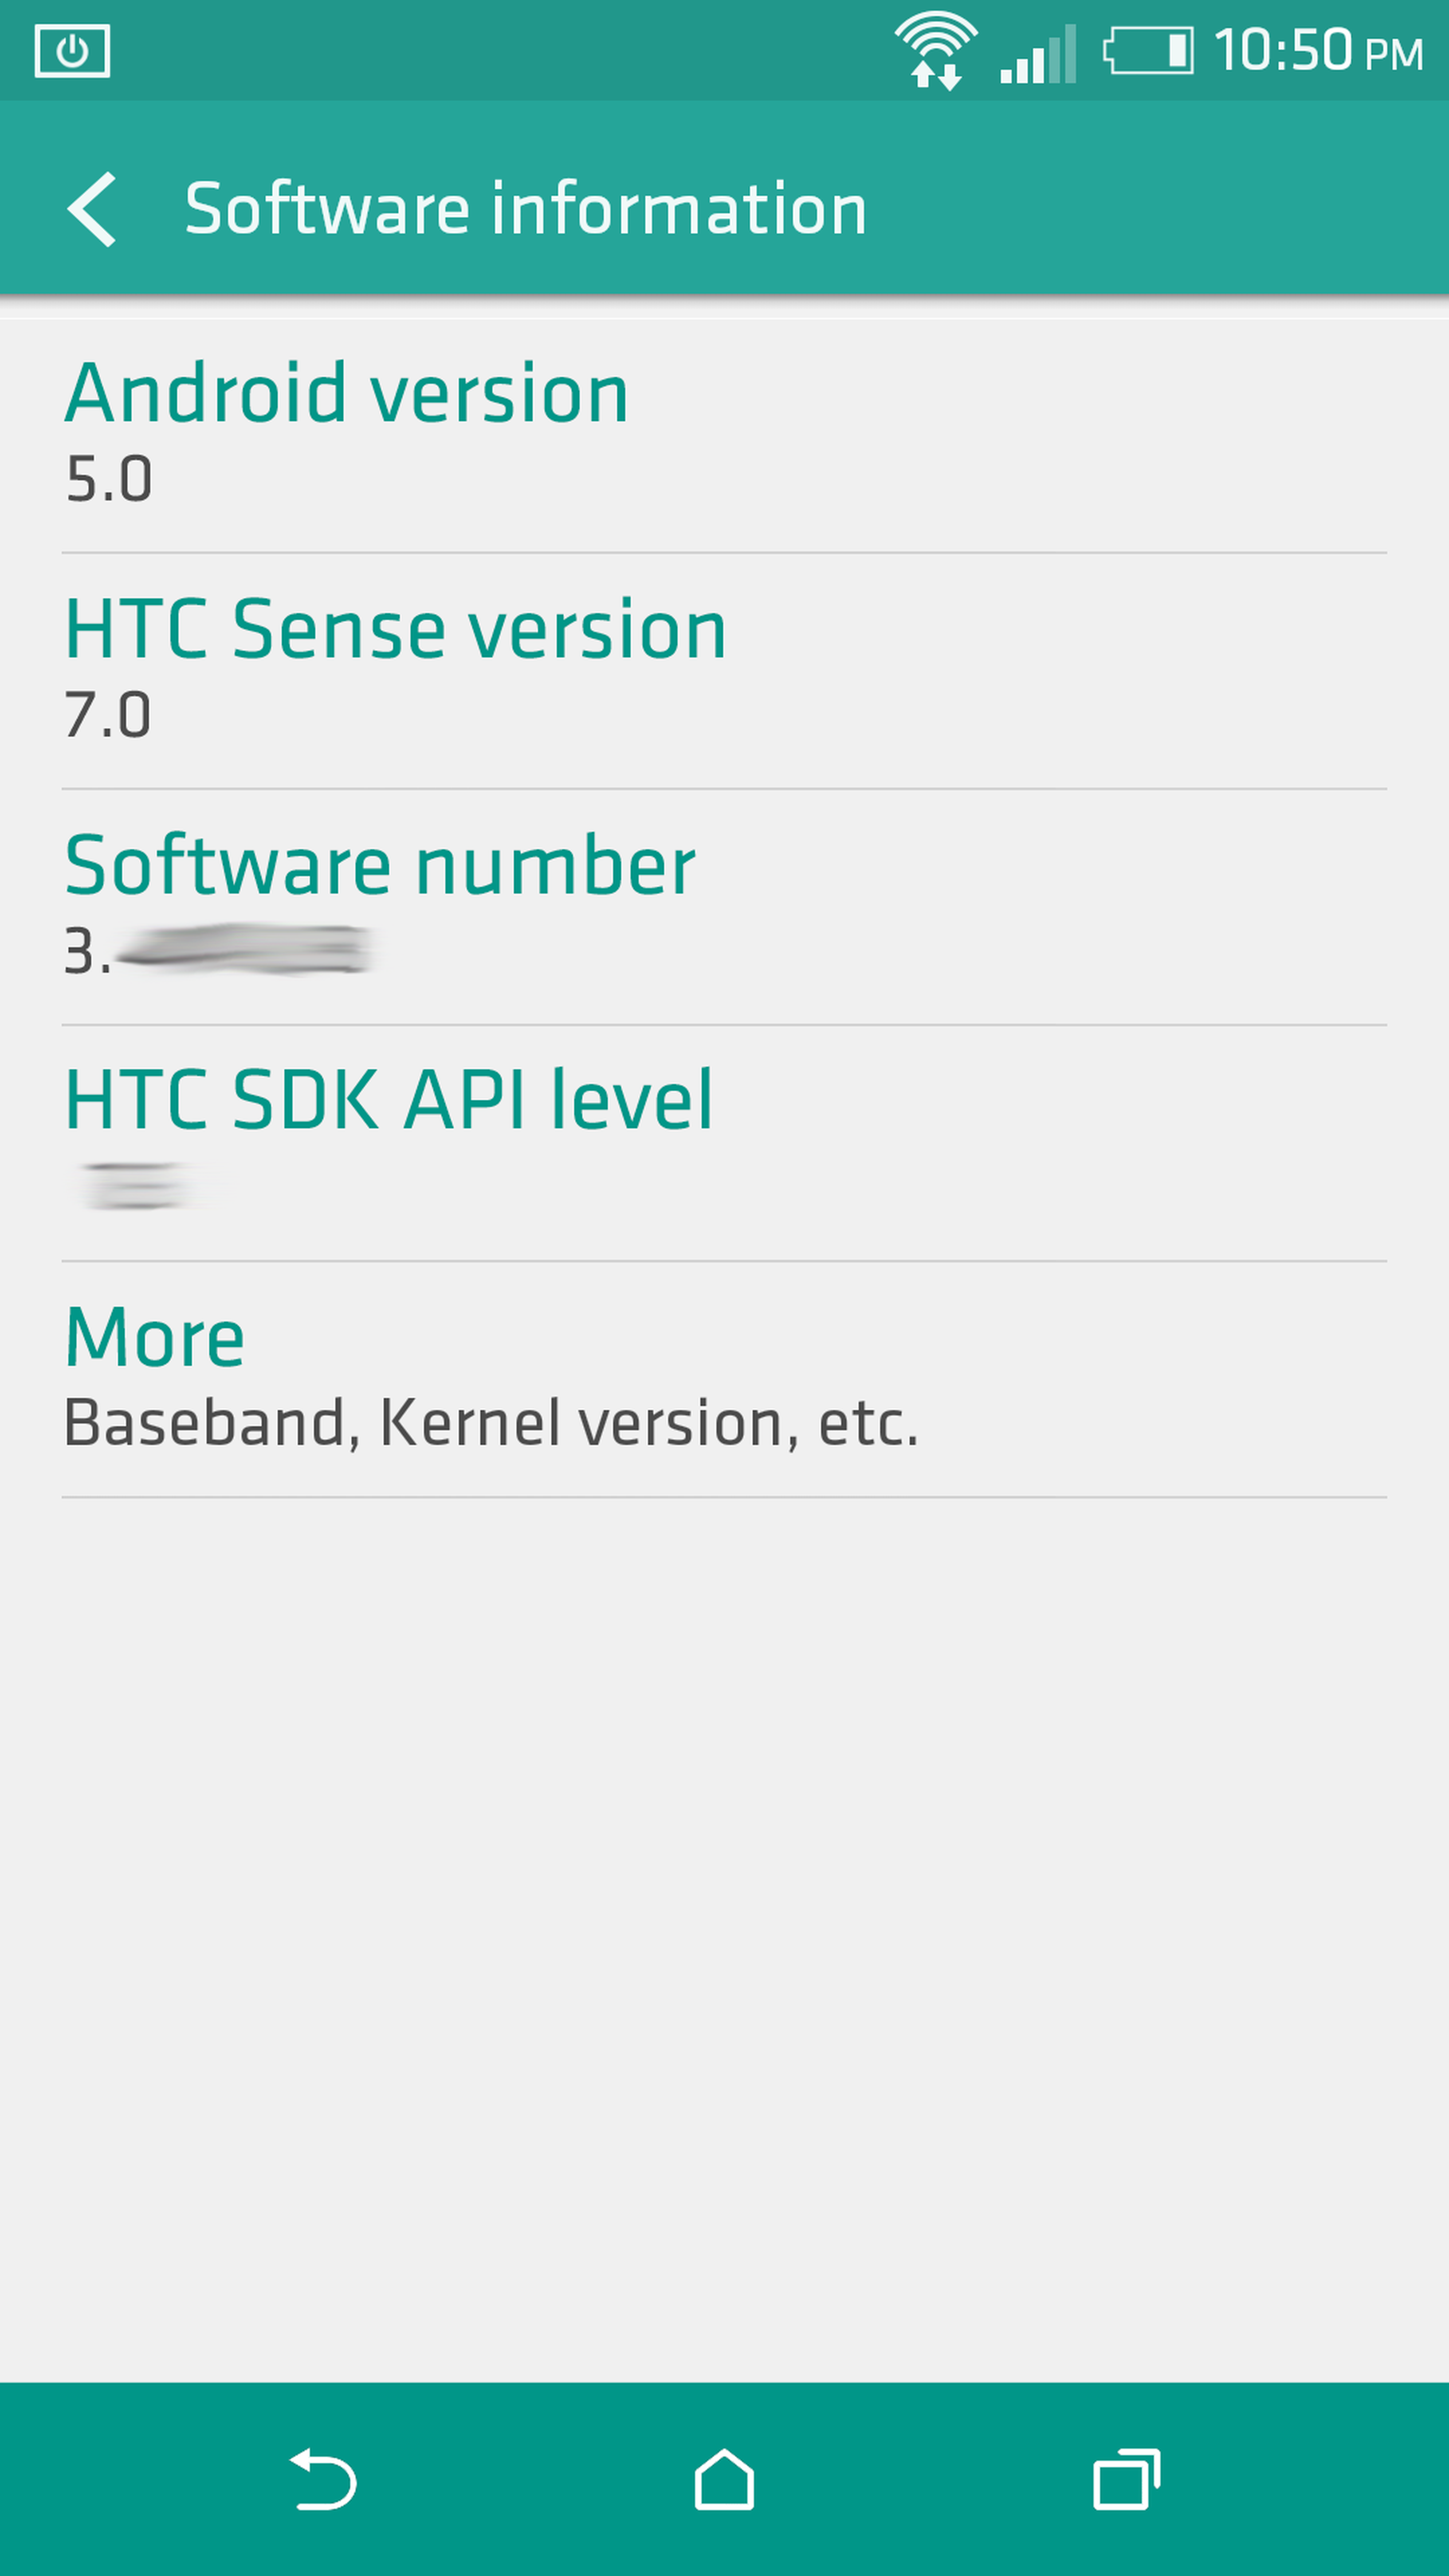 Captura de imagen anuncia próximo HTC Sense 7